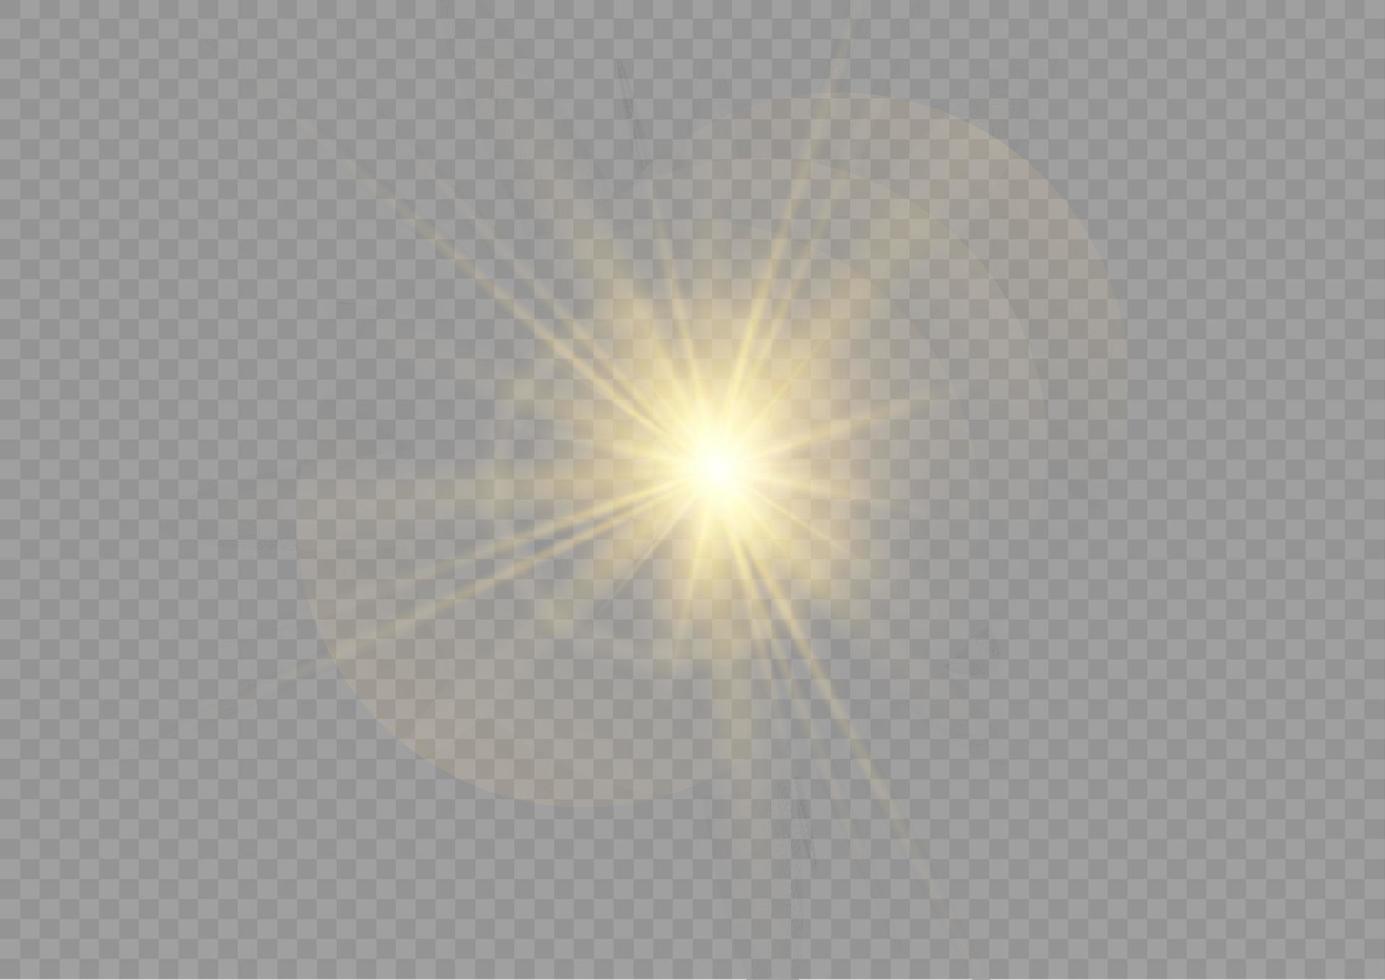 effet de lumière de lumière parasite vecteur soleil lumière spéciale. lumière solaire de la lentille frontale. flou vectoriel en lumière radieuse. élément de décor. faisceaux d'étoiles horizontaux et projecteur. étoile